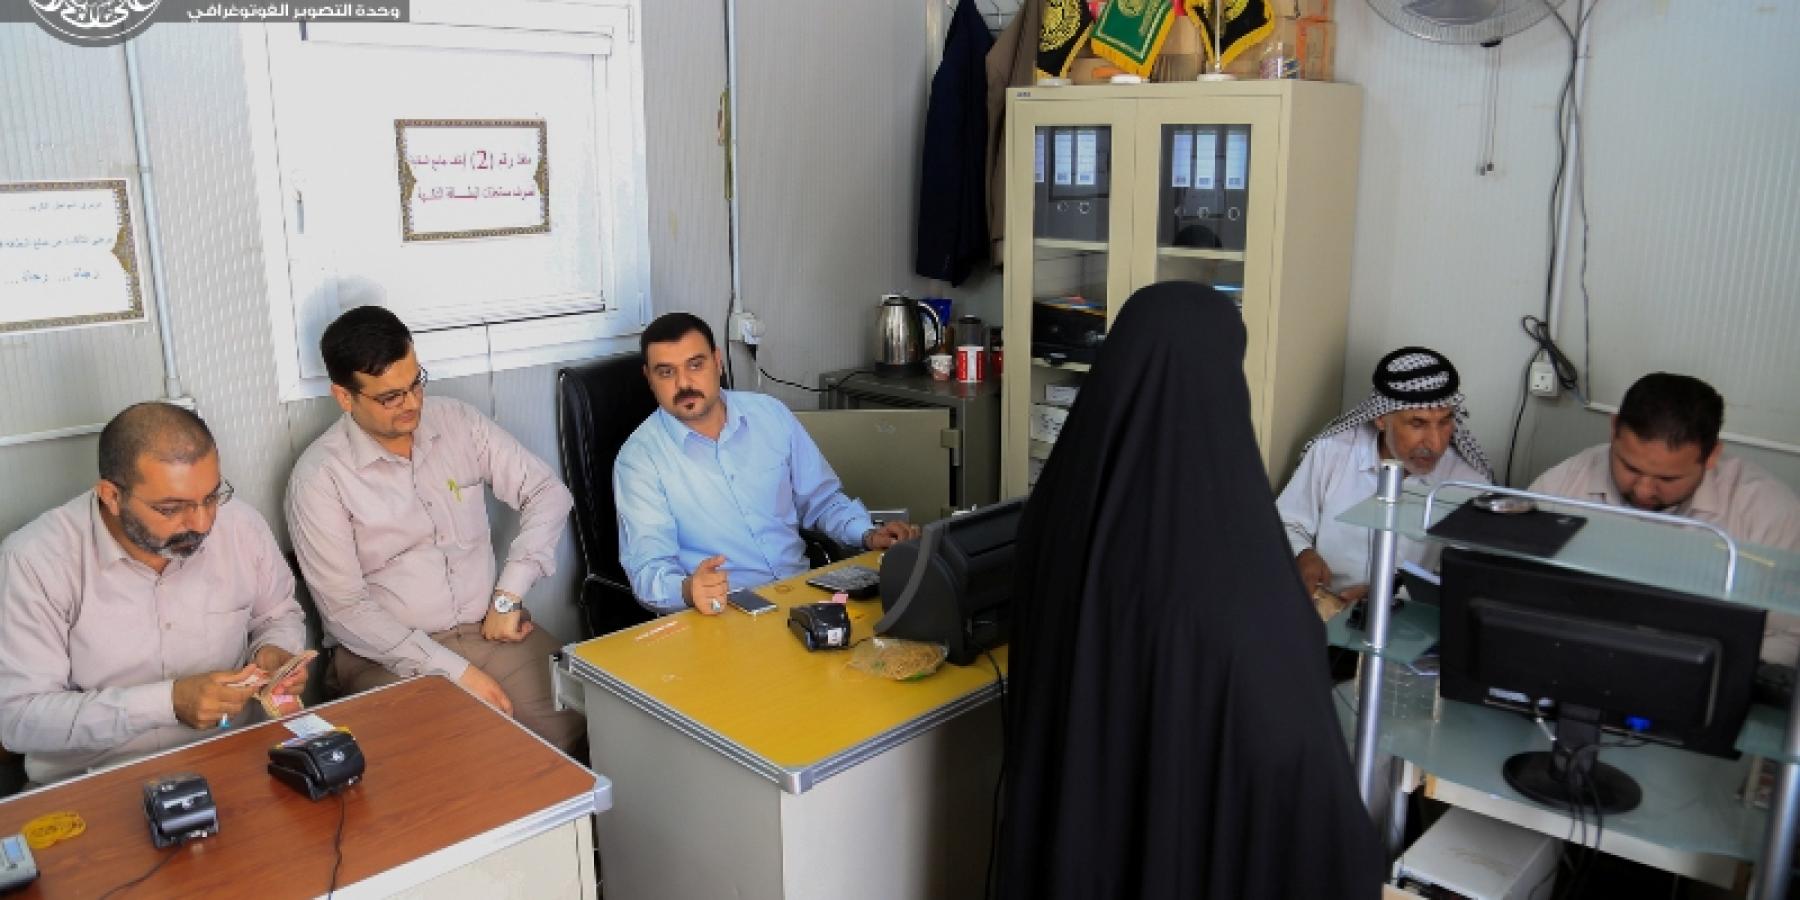 شعبة البطاقة الذكية في العتبة العلوية المقدسة تصل الى المرتبة الثانية على مستوى العراق في تقديم الخدمات المالية للمواطنين